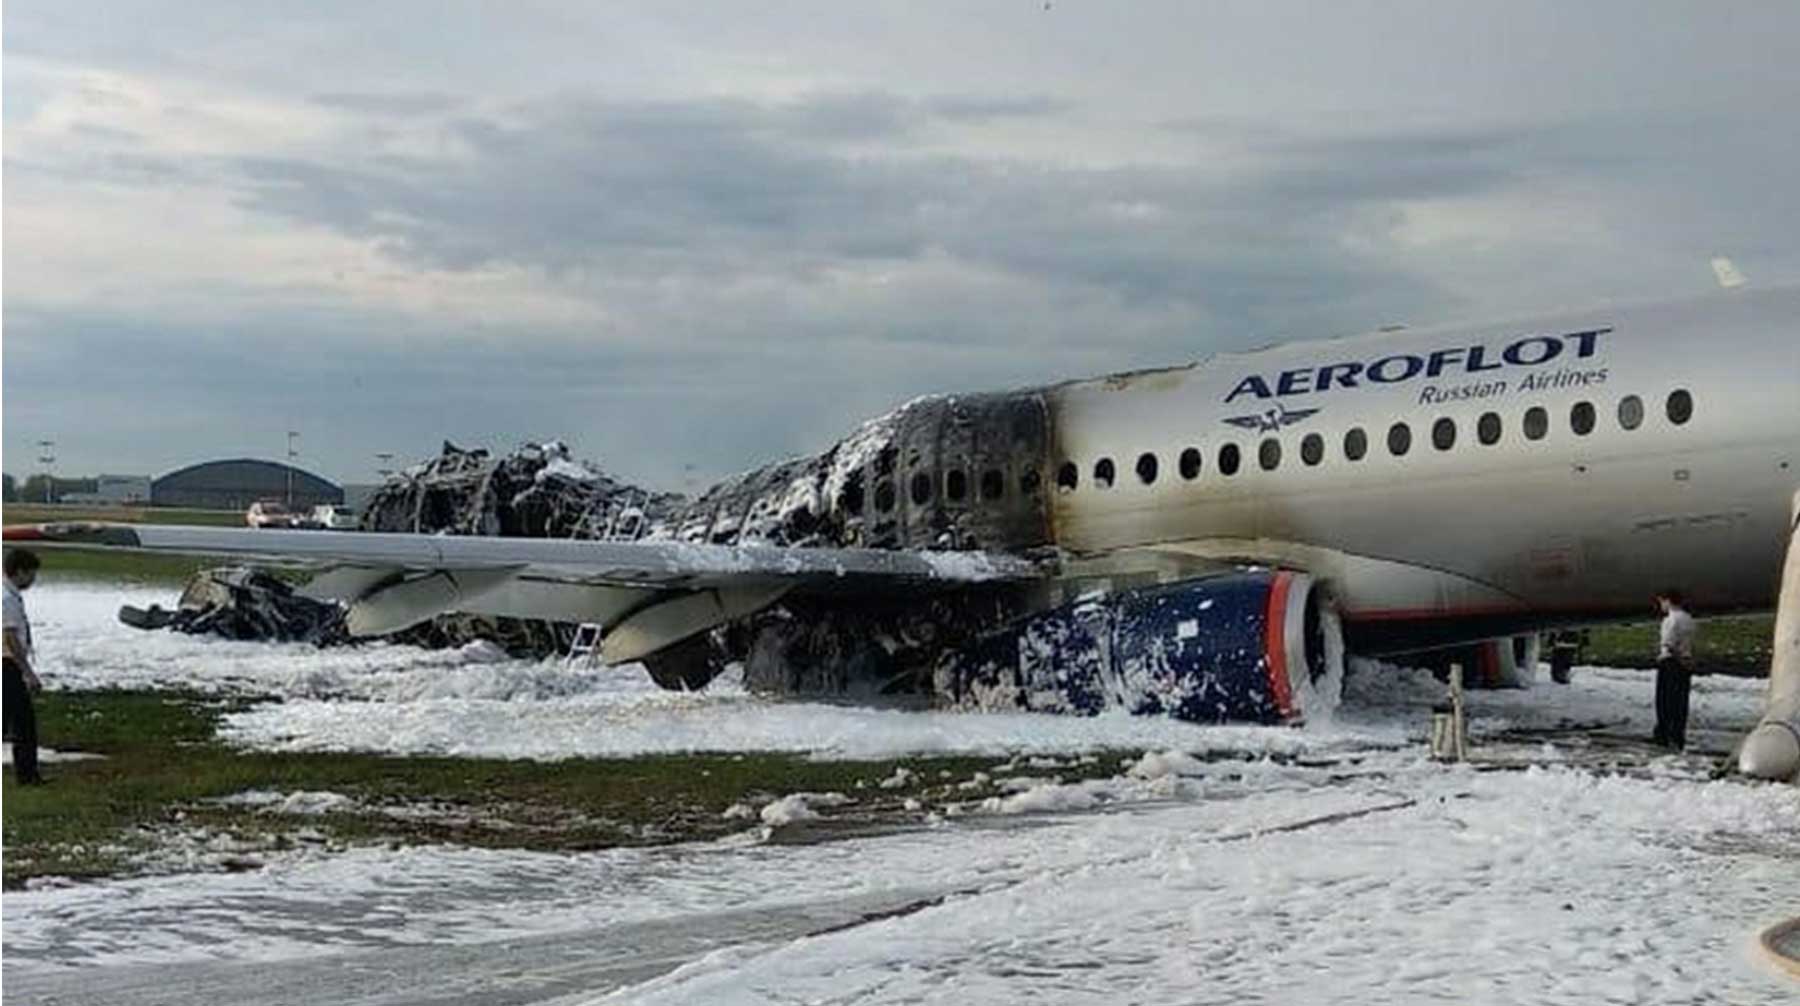 Пилоты не выключили двигатели после приземления и открыли окно в кабине, что могло усилить пожар на борту судна, выяснили в СКР Фото: © GLOBAL LOOK press / City News Moskva